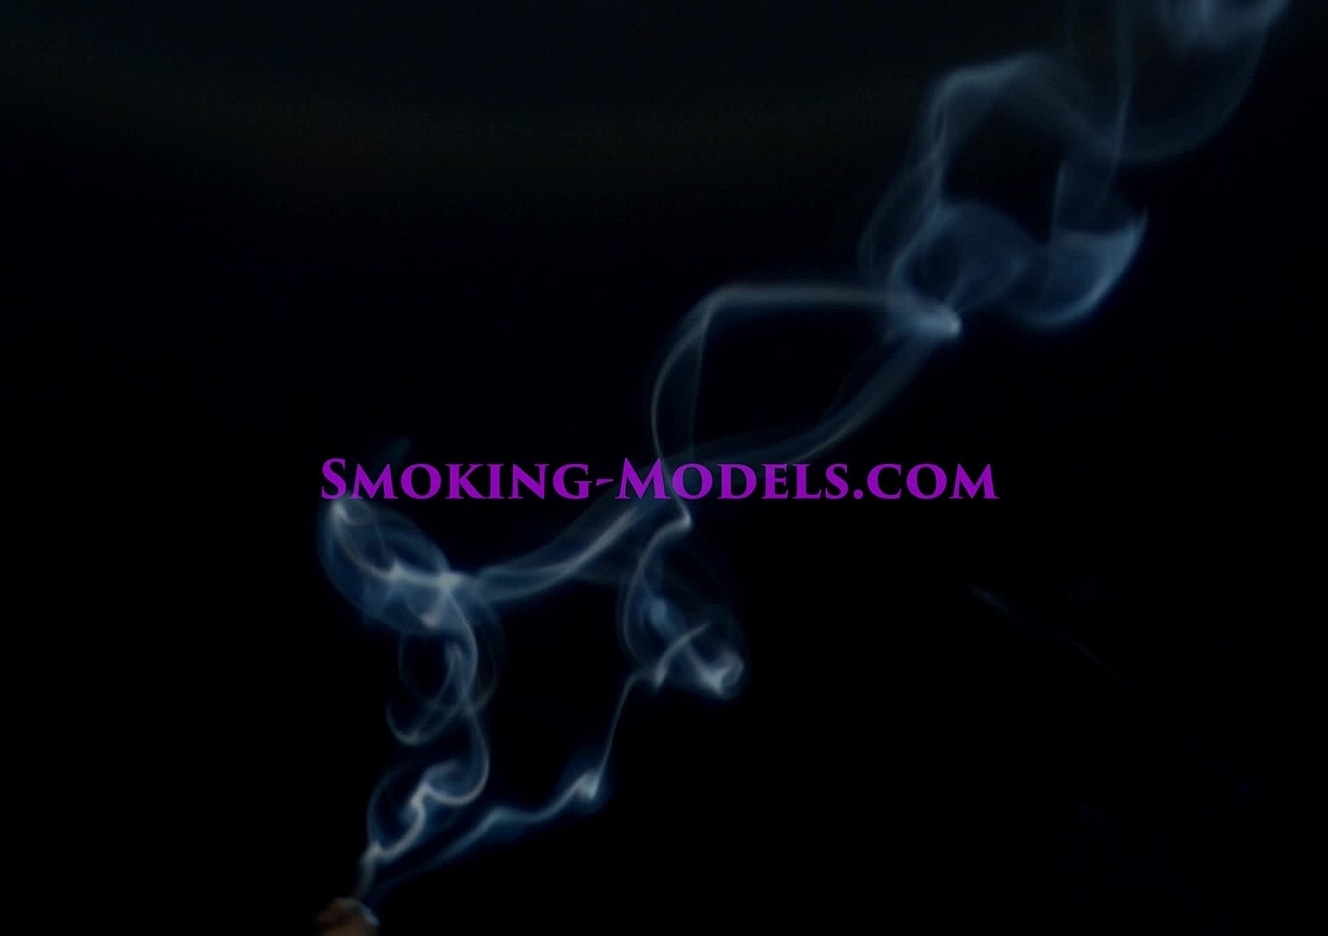 content/SMOKINGM-V-3015/0.jpg